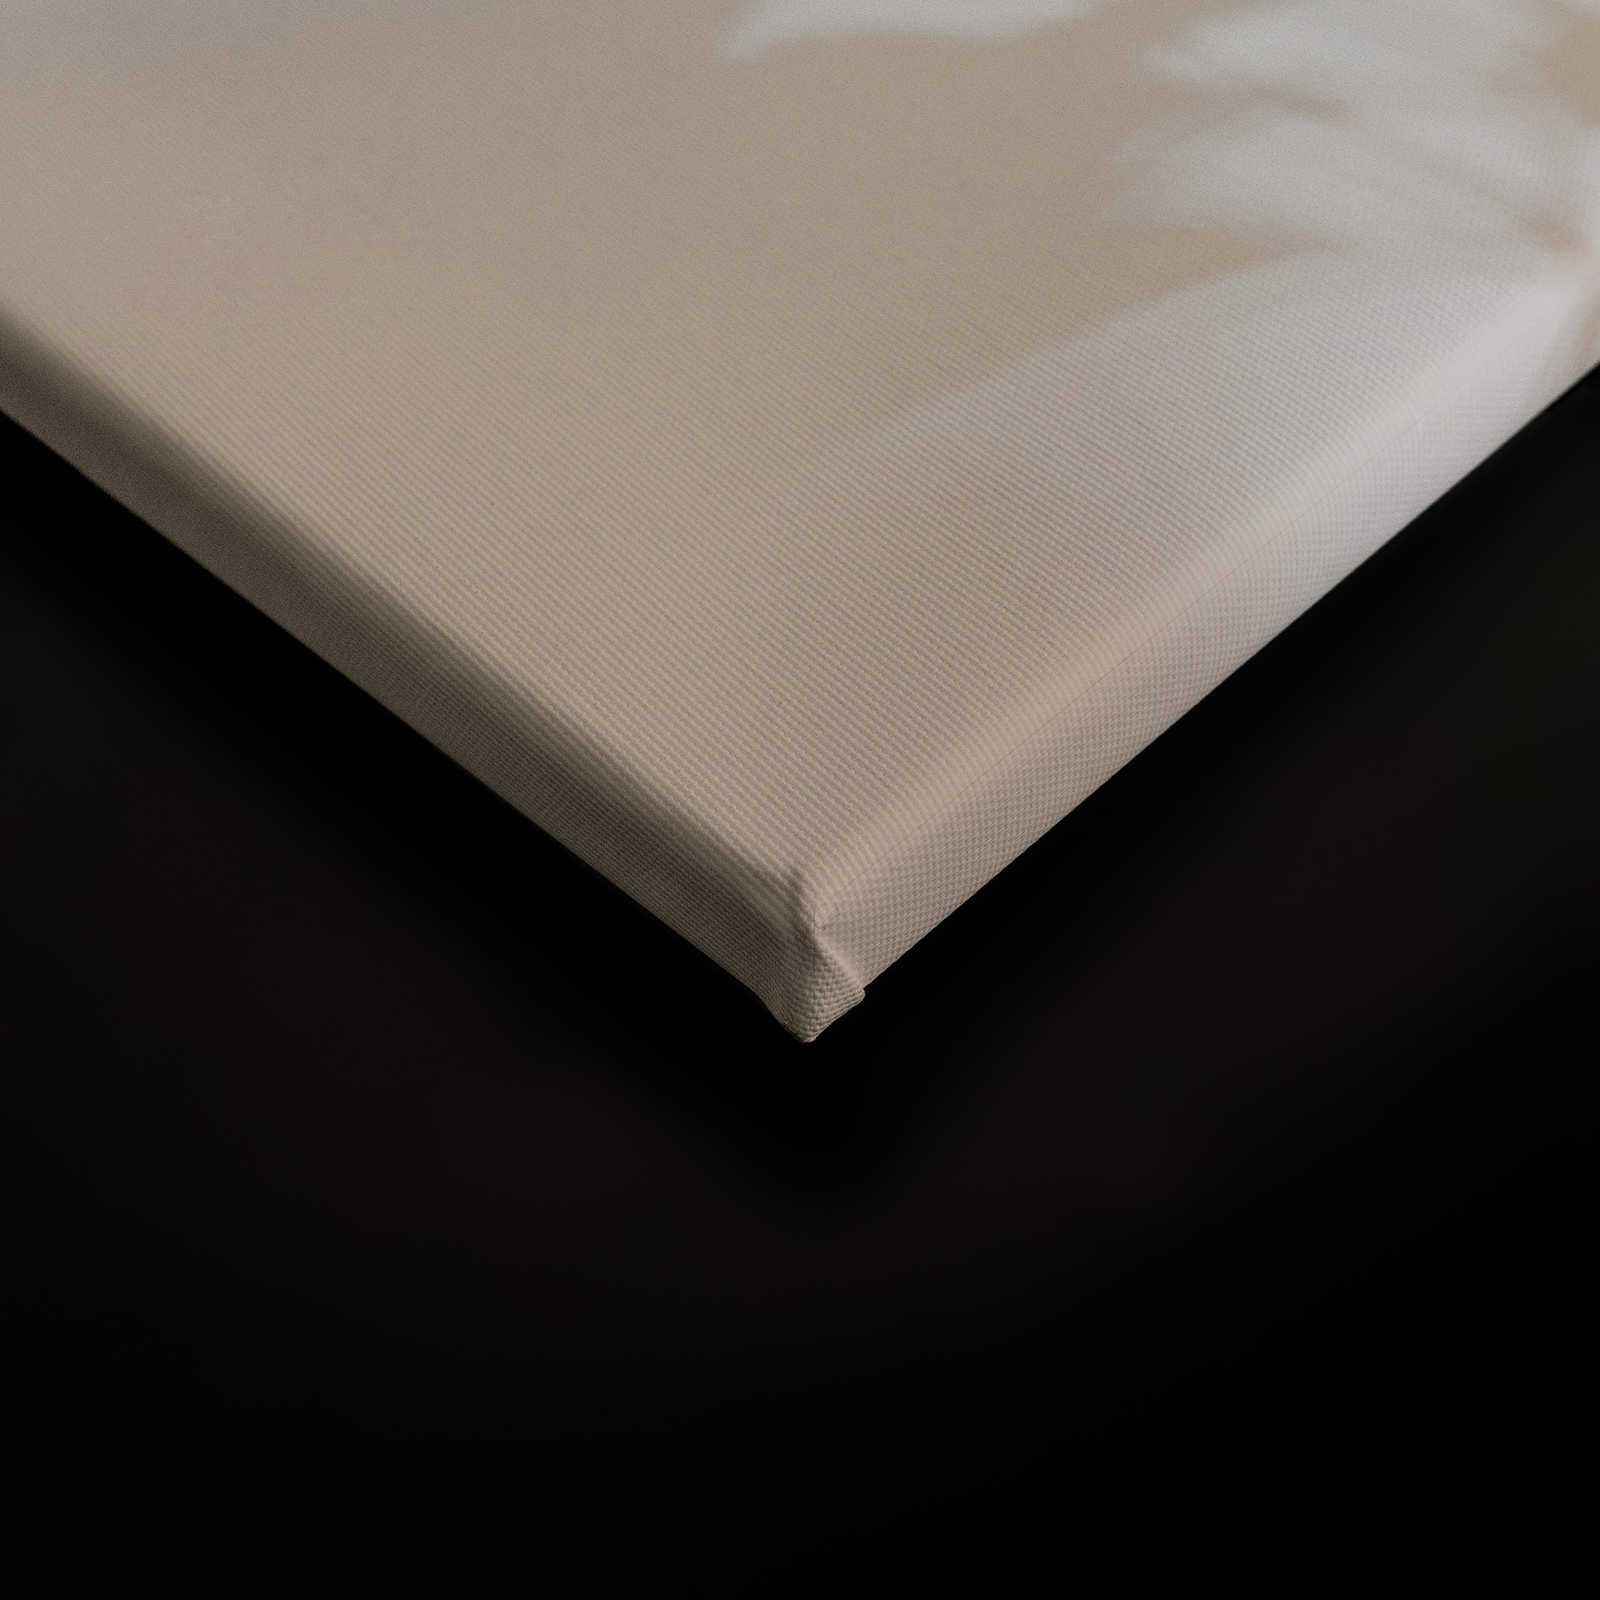             Shadow Room 1 - Natur Leinwandbild Beige & Weiß, verblasstes Design – 0,90 m x 0,60 m
        